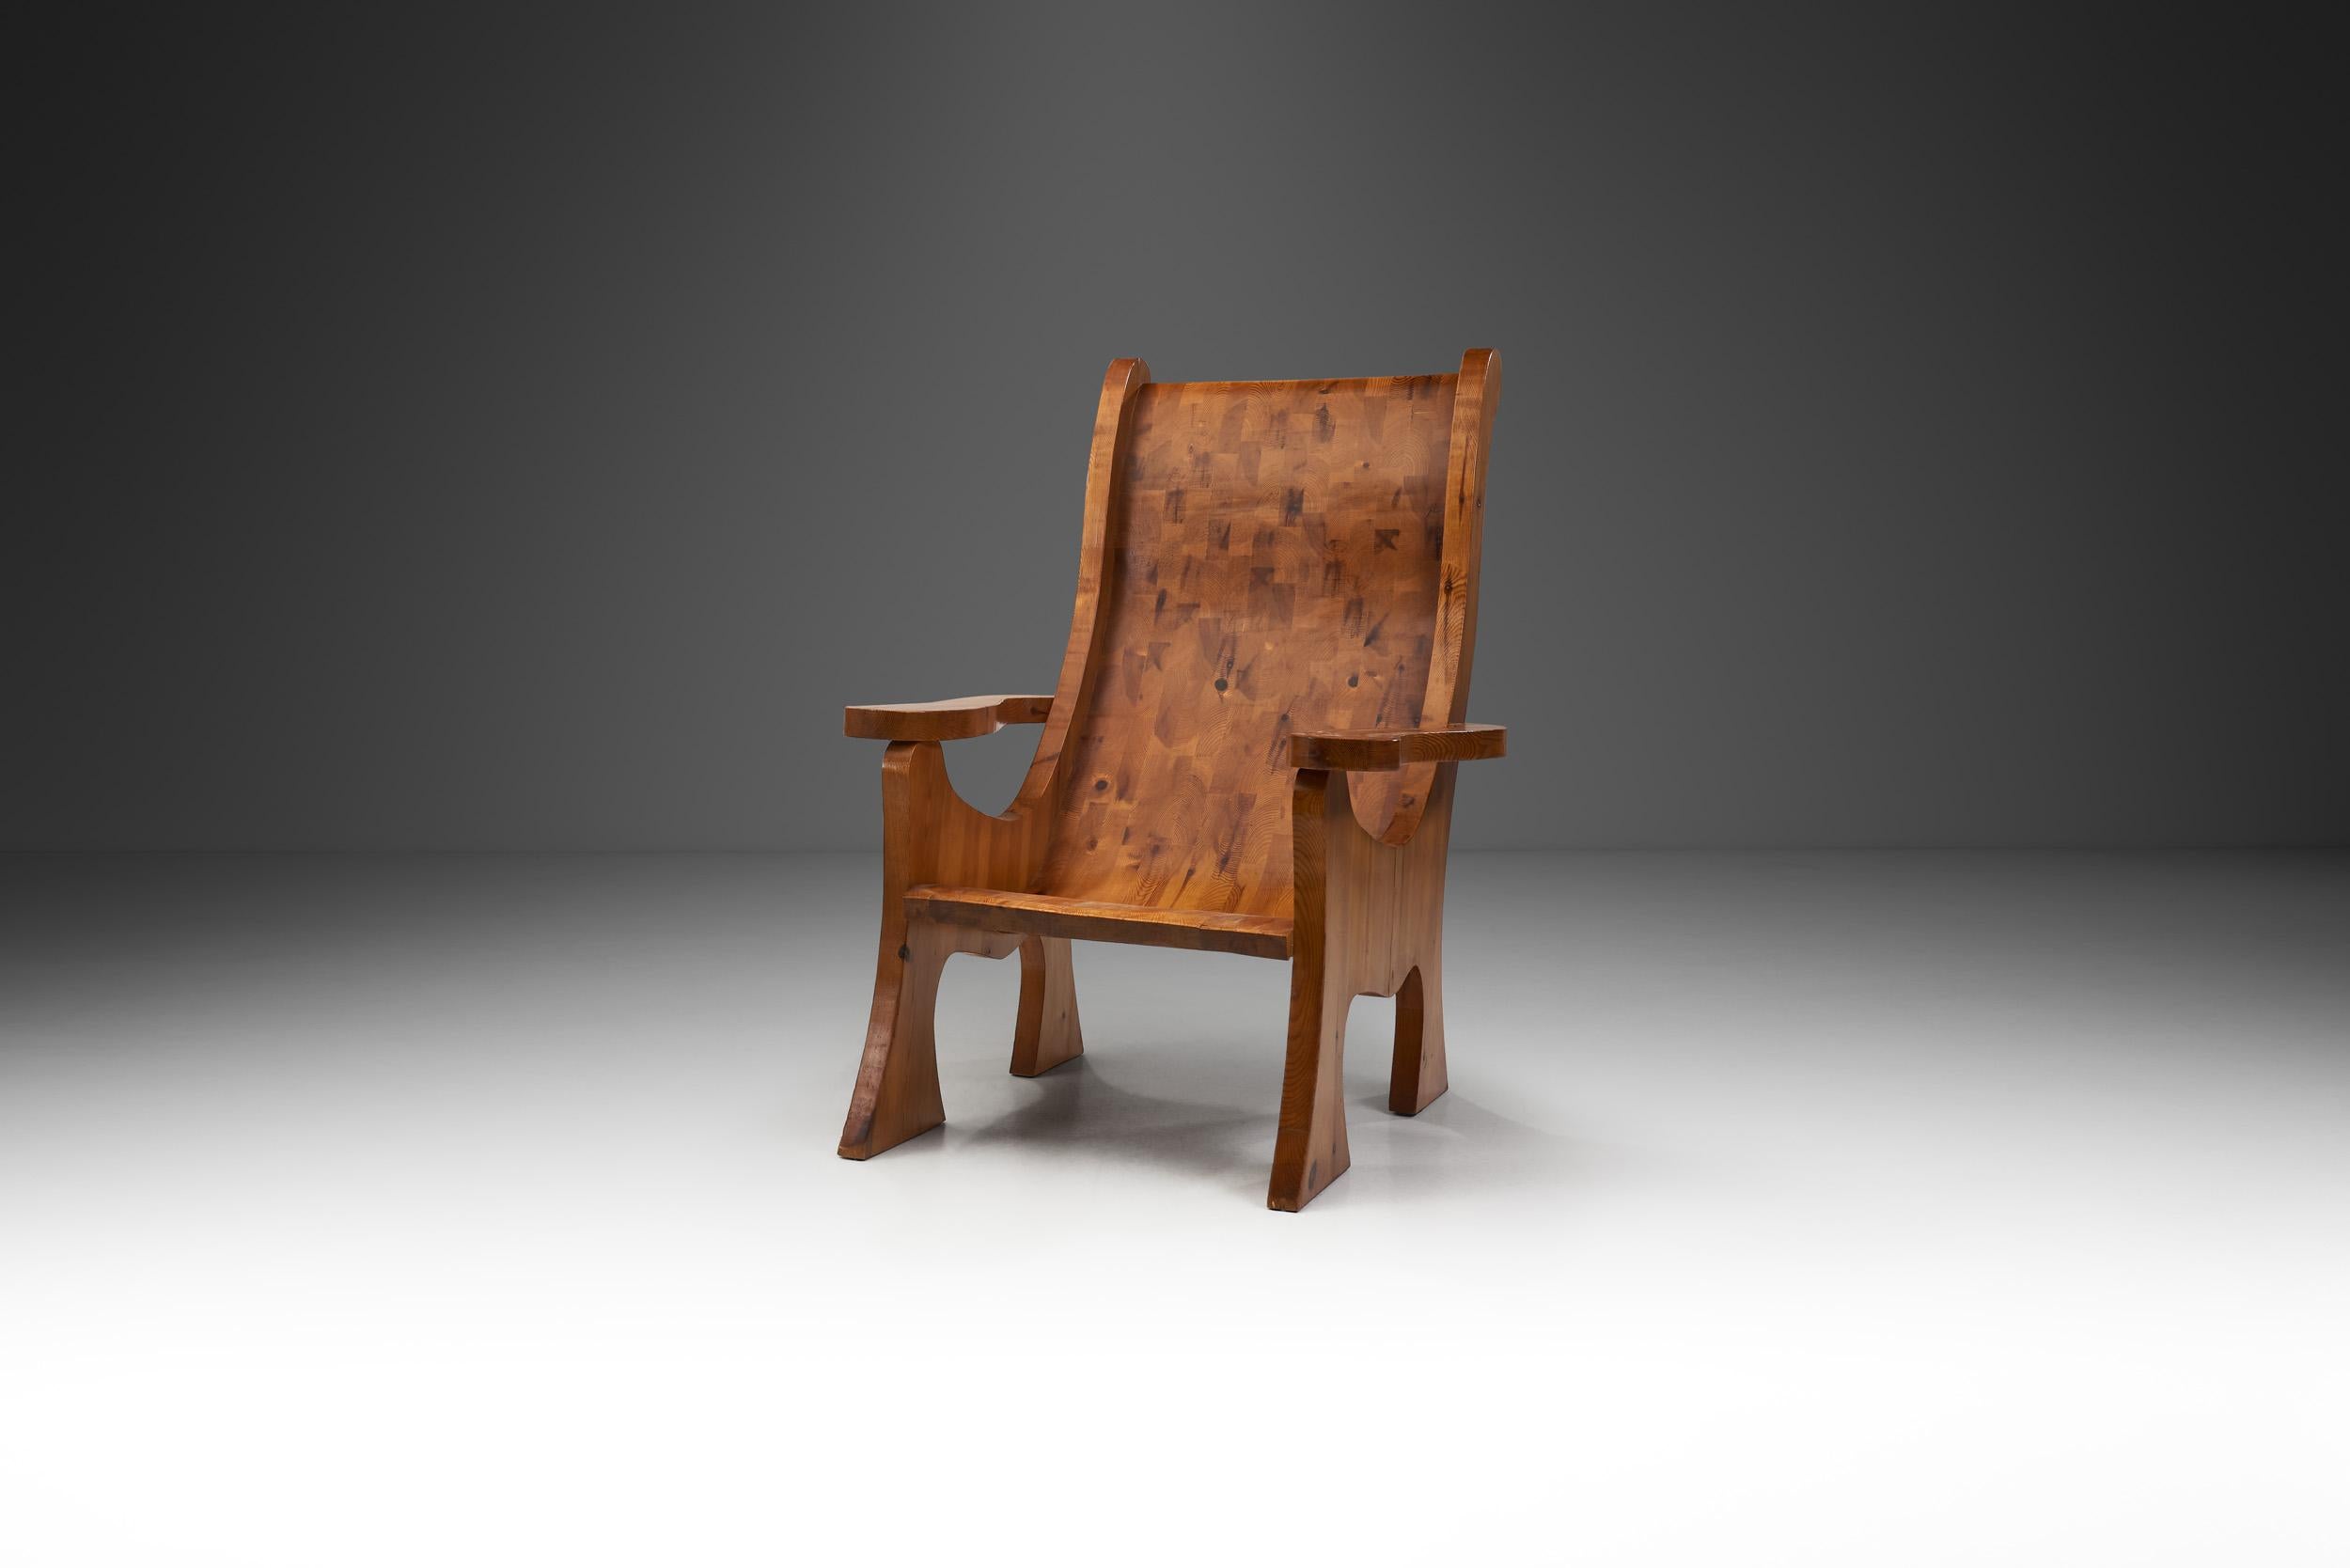 Cette chaise accrocheuse a beaucoup de personnalité, rappelant différents styles et époques de design, notamment le mouvement Arts and Crafts, les modèles minimalistes en pin de la série Lovö d'Axel Einar Hjorth ou l'école d'Amsterdam.

Des formes